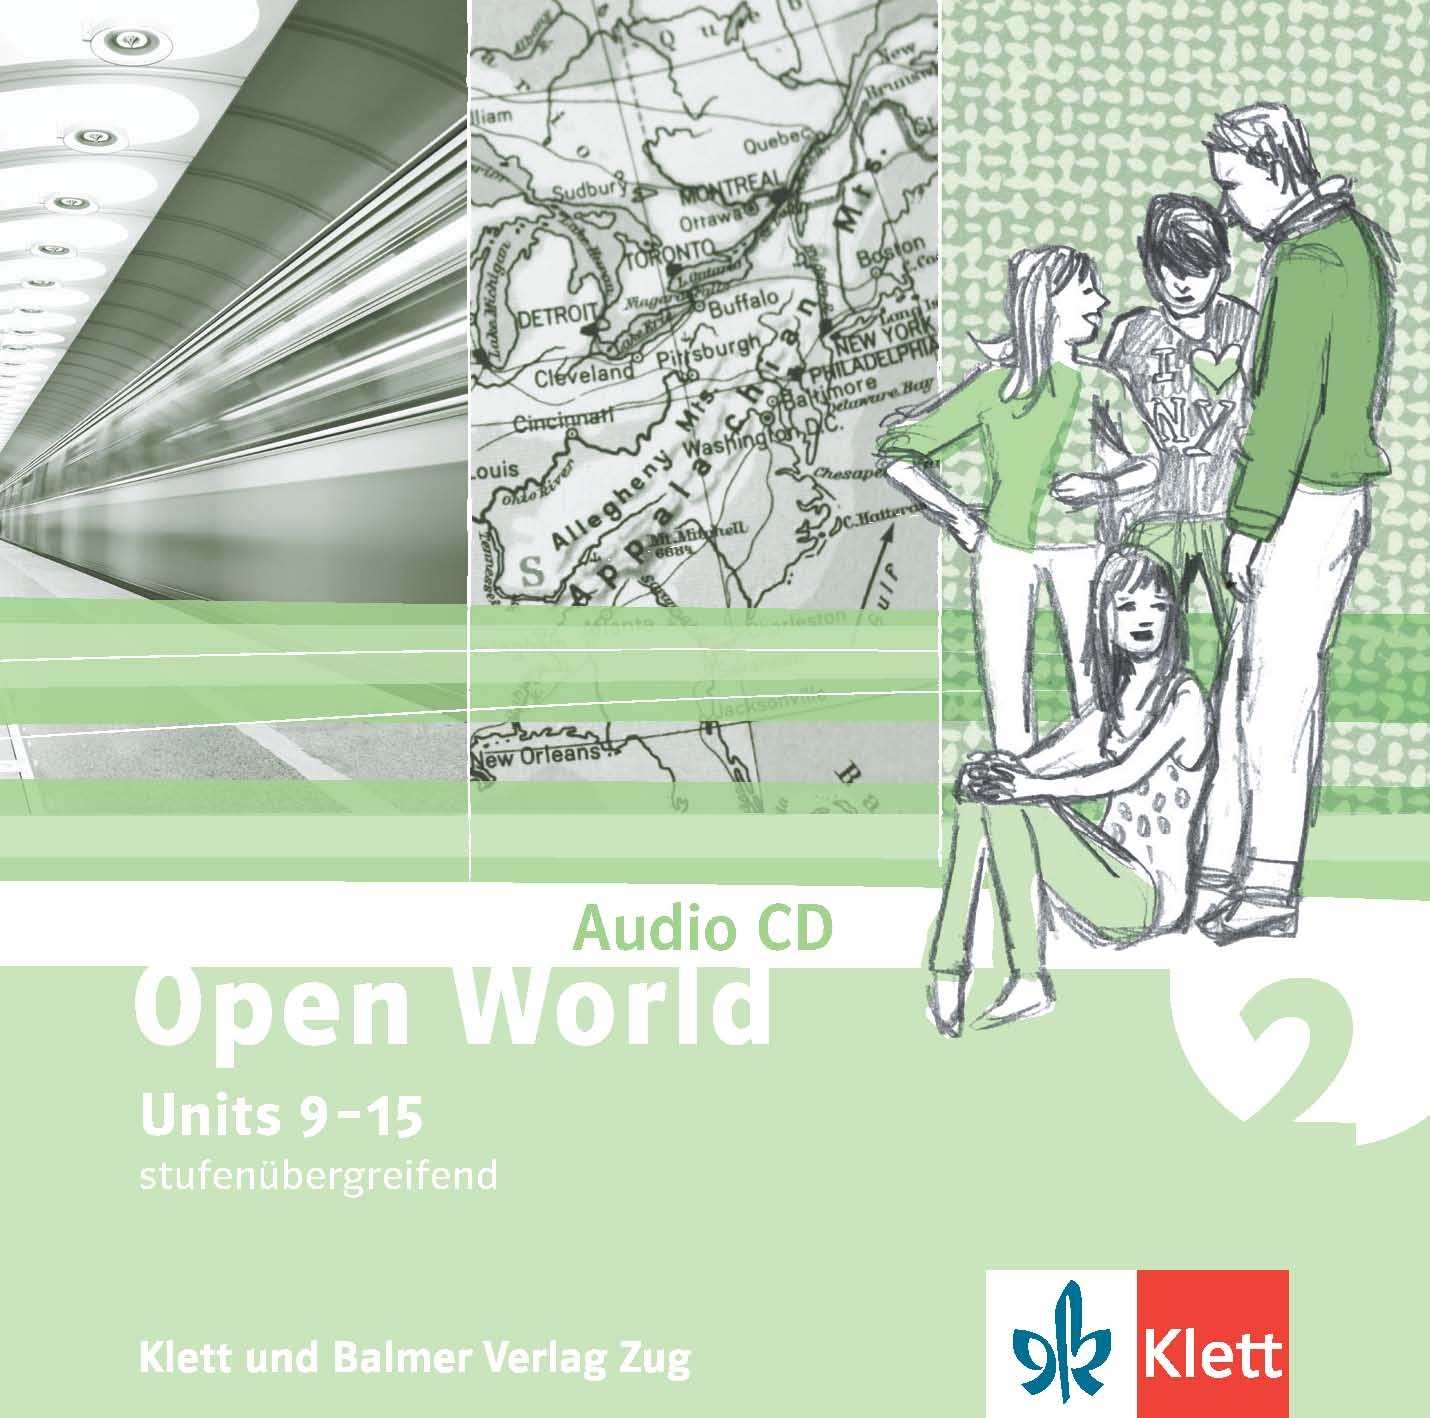 Open World 2, Audio CD,10er-Box/ ALTE V. Units 9-15, SPEZIALBESTELLUNG